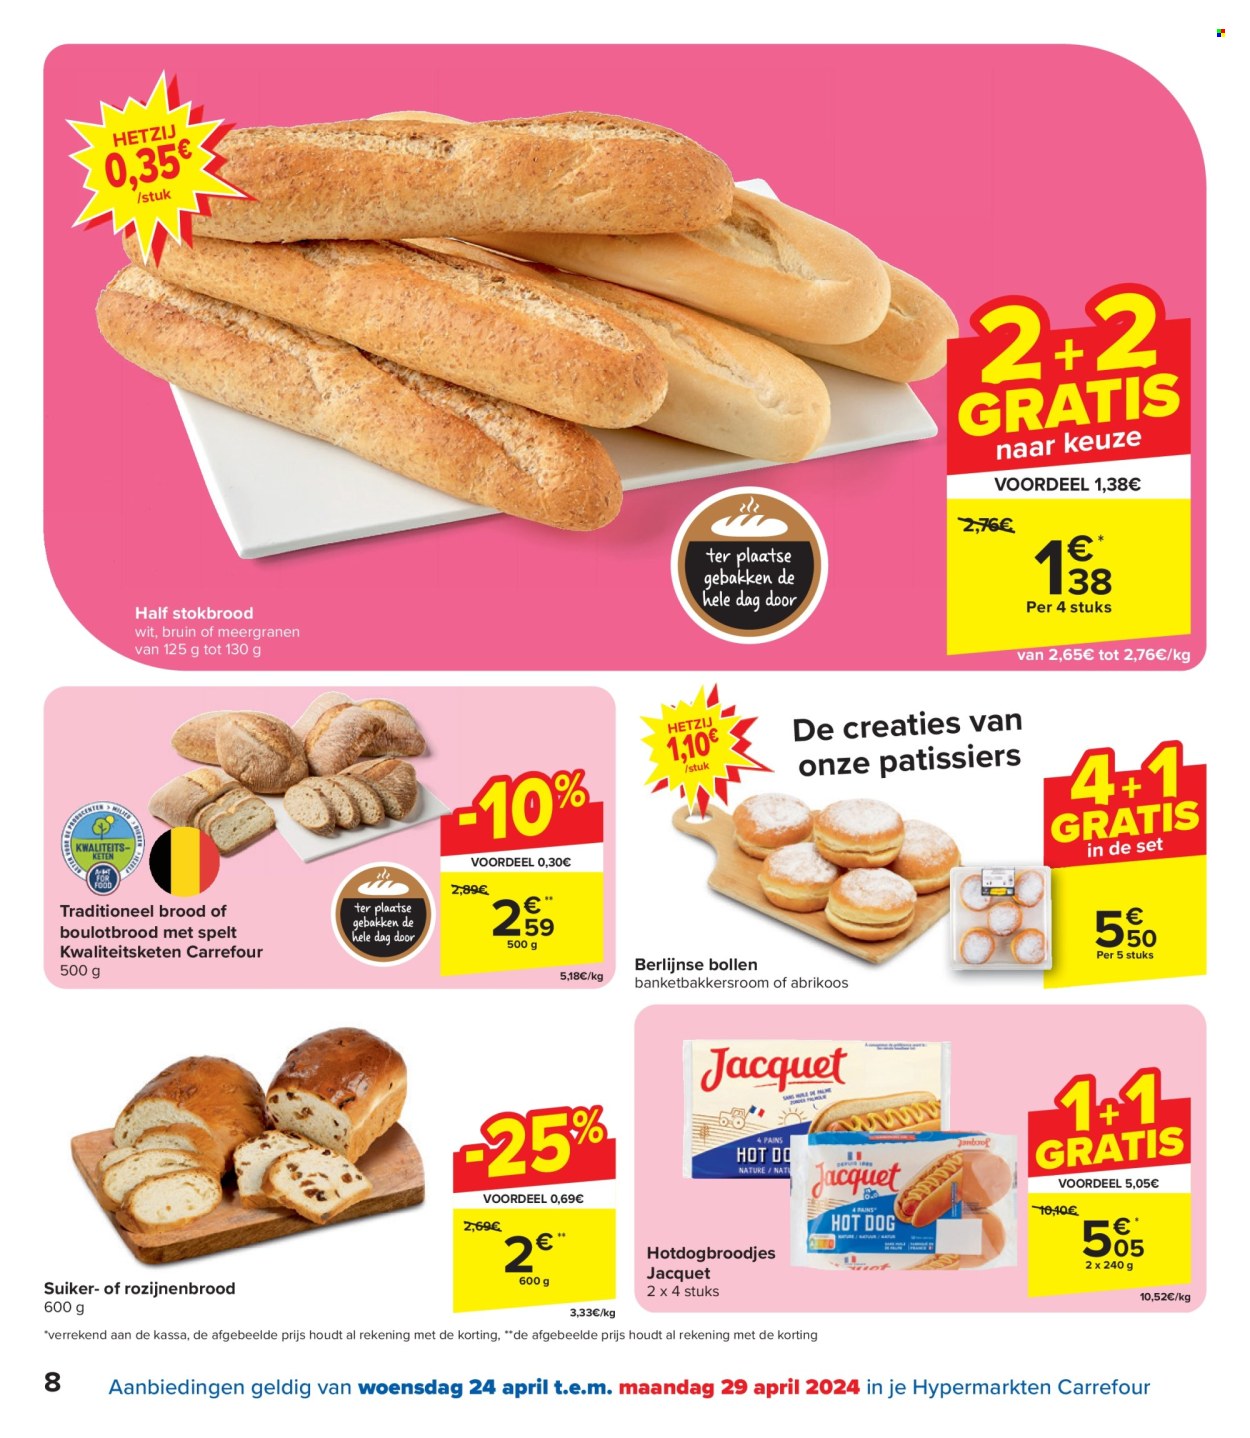 thumbnail - Carrefour hypermarkt-aanbieding - 24/04/2024 - 06/05/2024 -  producten in de aanbieding - stokbrood, suikerbrood, brood, banketbakkersroom, suiker, Spelt. Pagina 8.